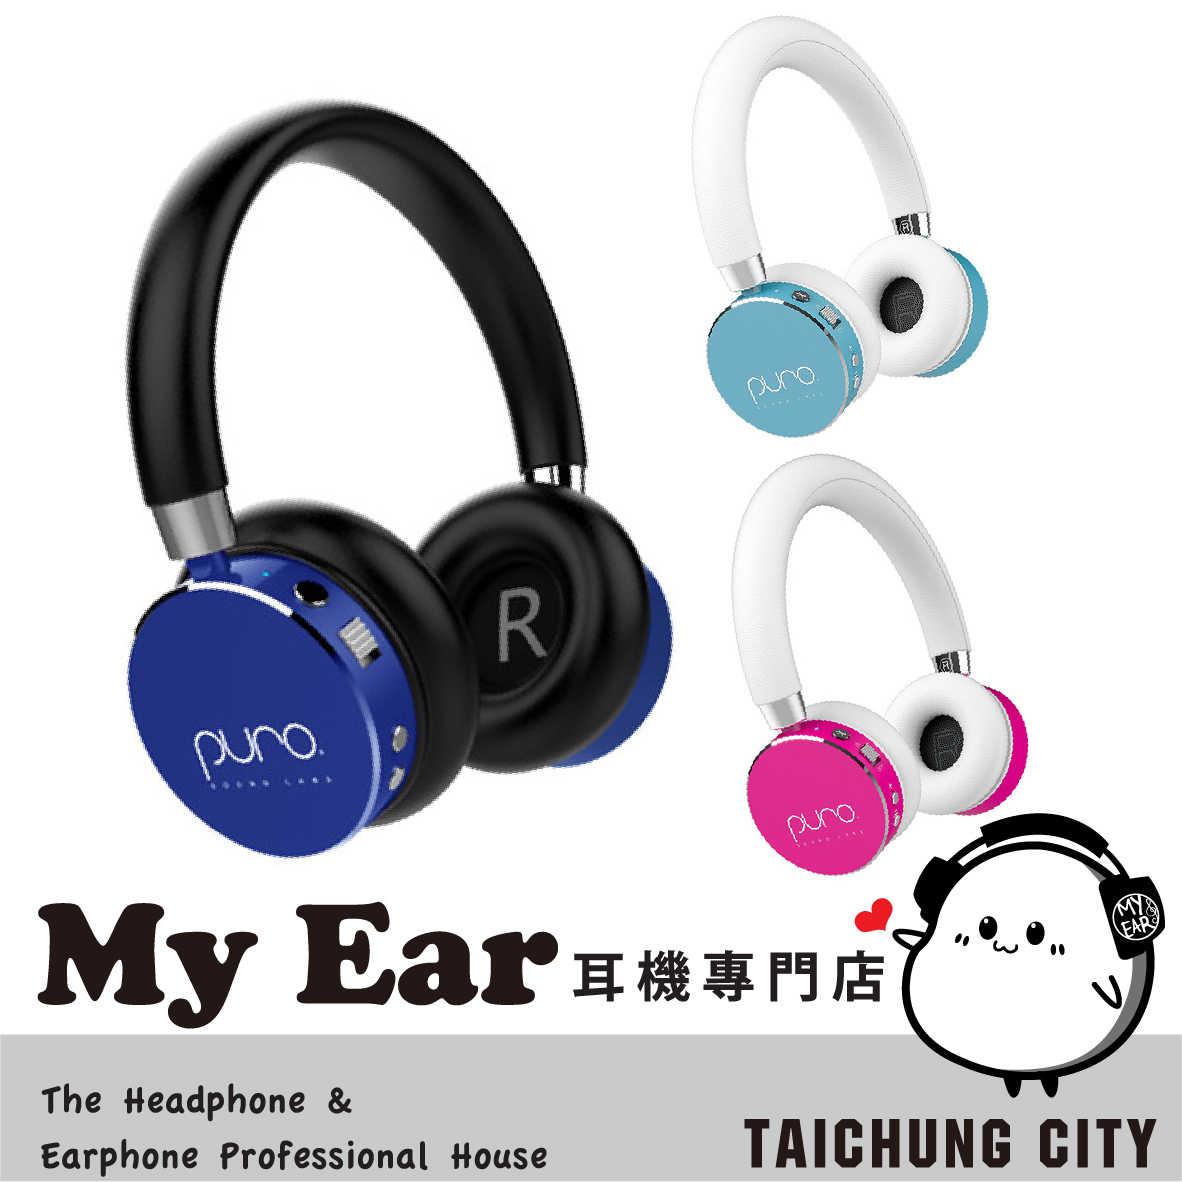 Puro BT2200s 桃紅 兒童耳機 安全音量 長效續航 麥克風 耳罩式耳機 | My Ear 耳機專門店